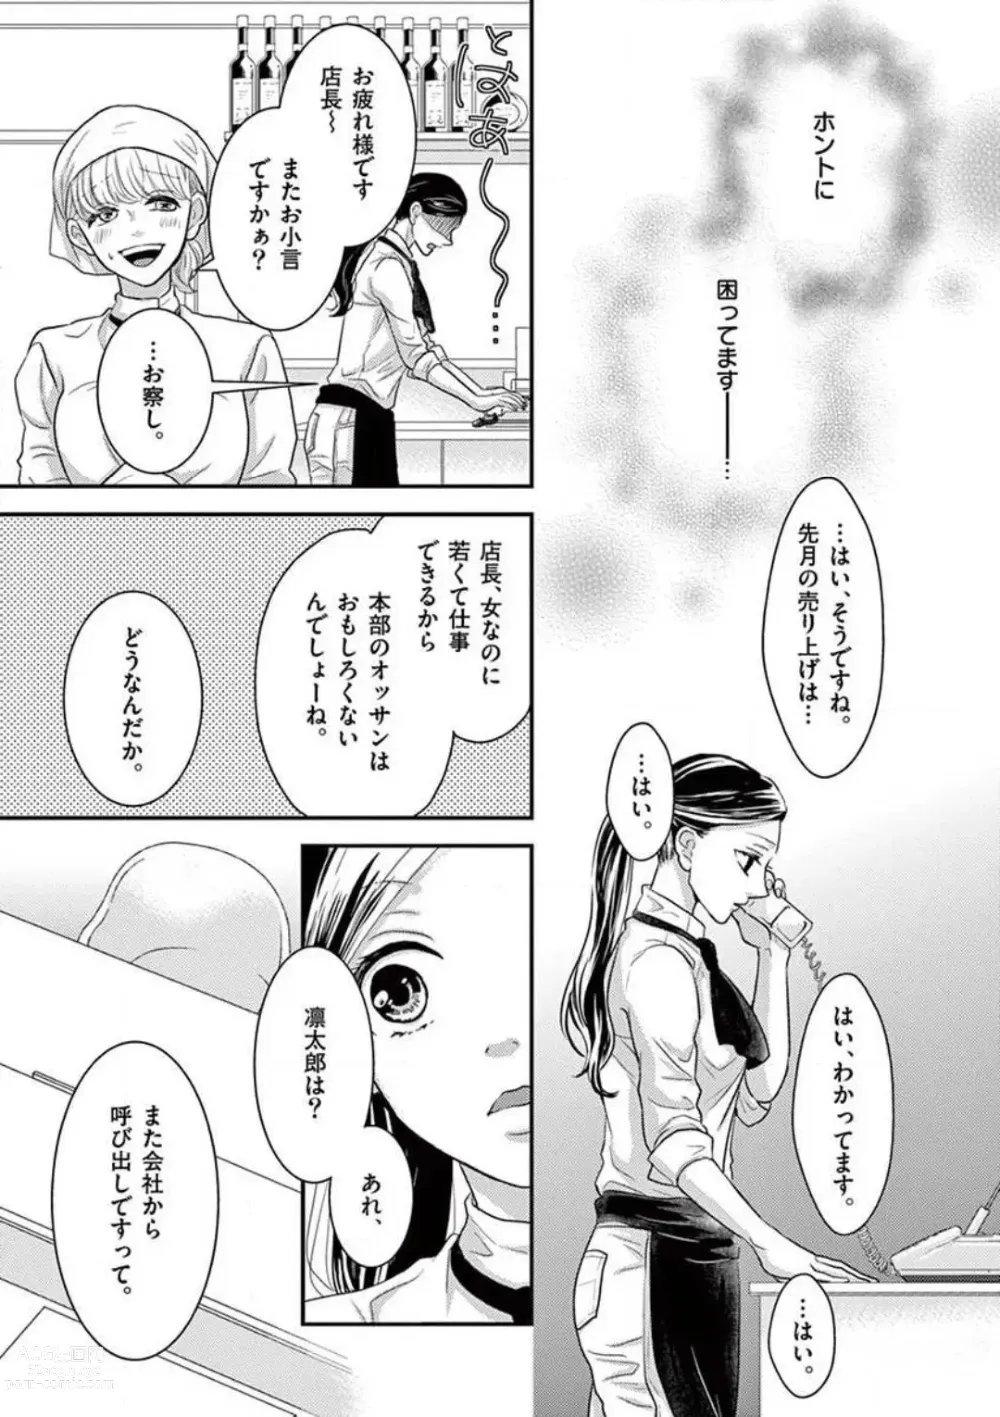 Page 7 of manga Yajū Suitchi ON!〜 Junjō Wanko wa Hageshi Sugi 〜